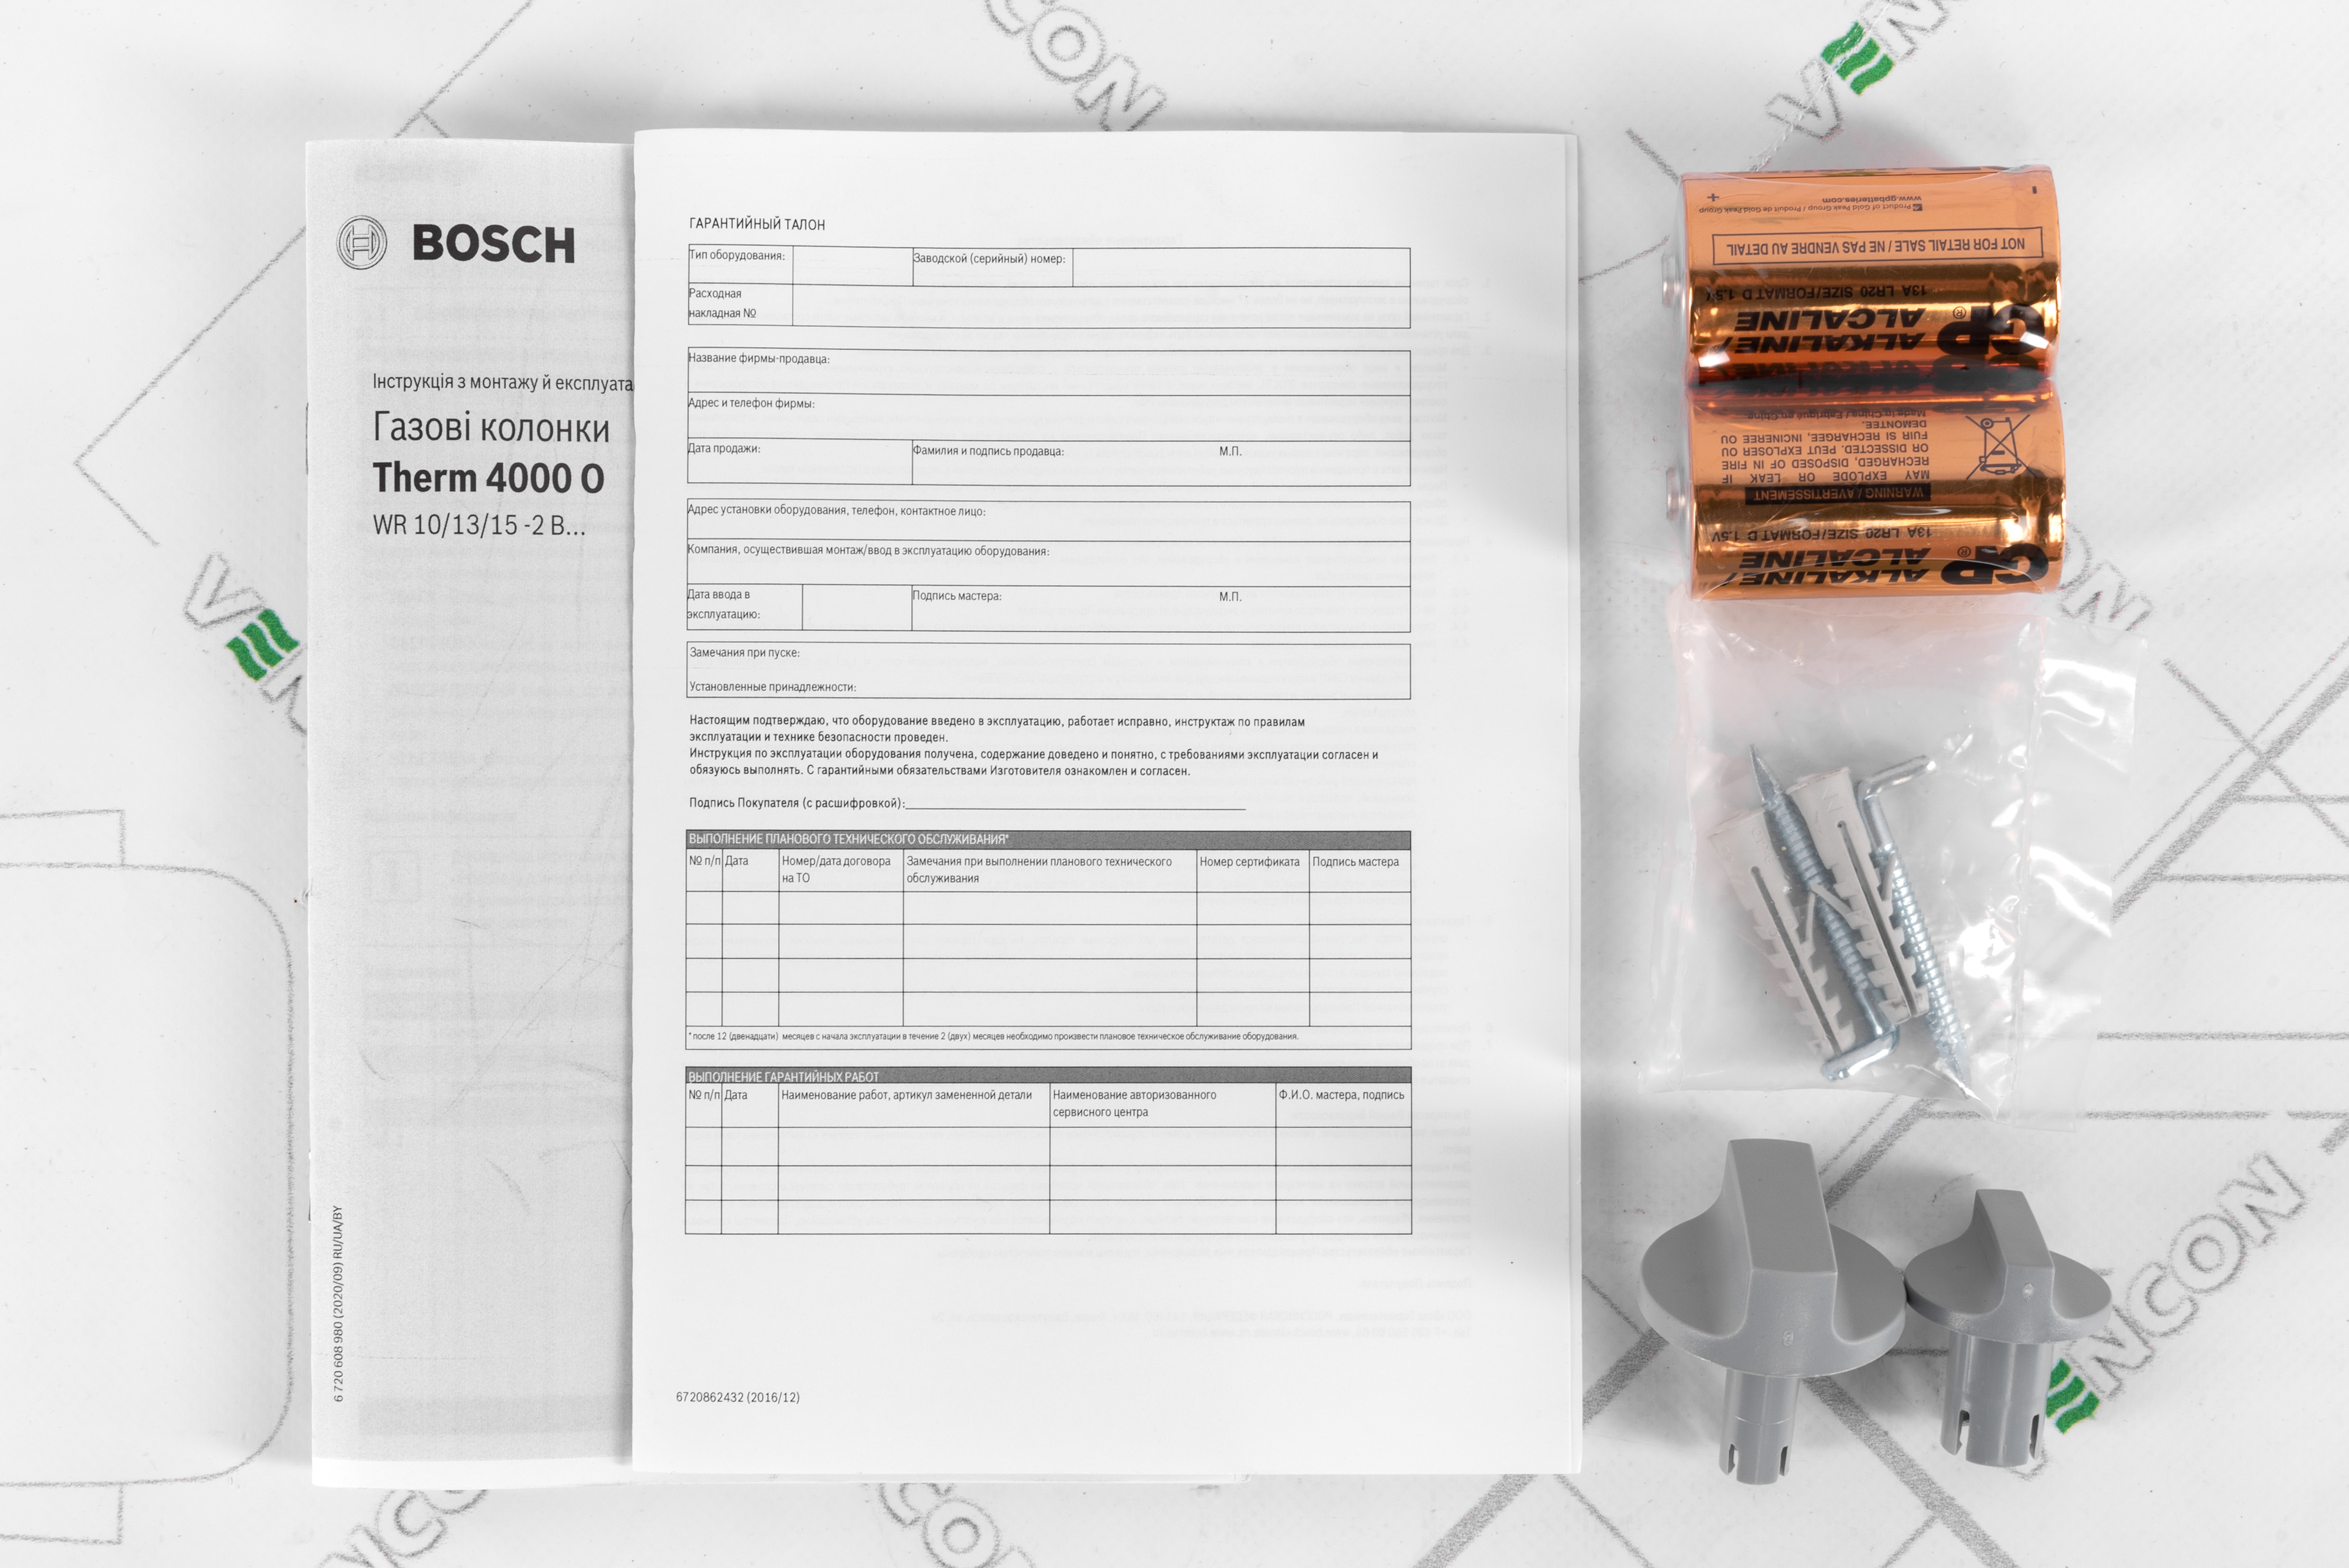 огляд товару Газова колонка Bosch Therm 4000 O WR 10-2 B (7701331617) - фотографія 12